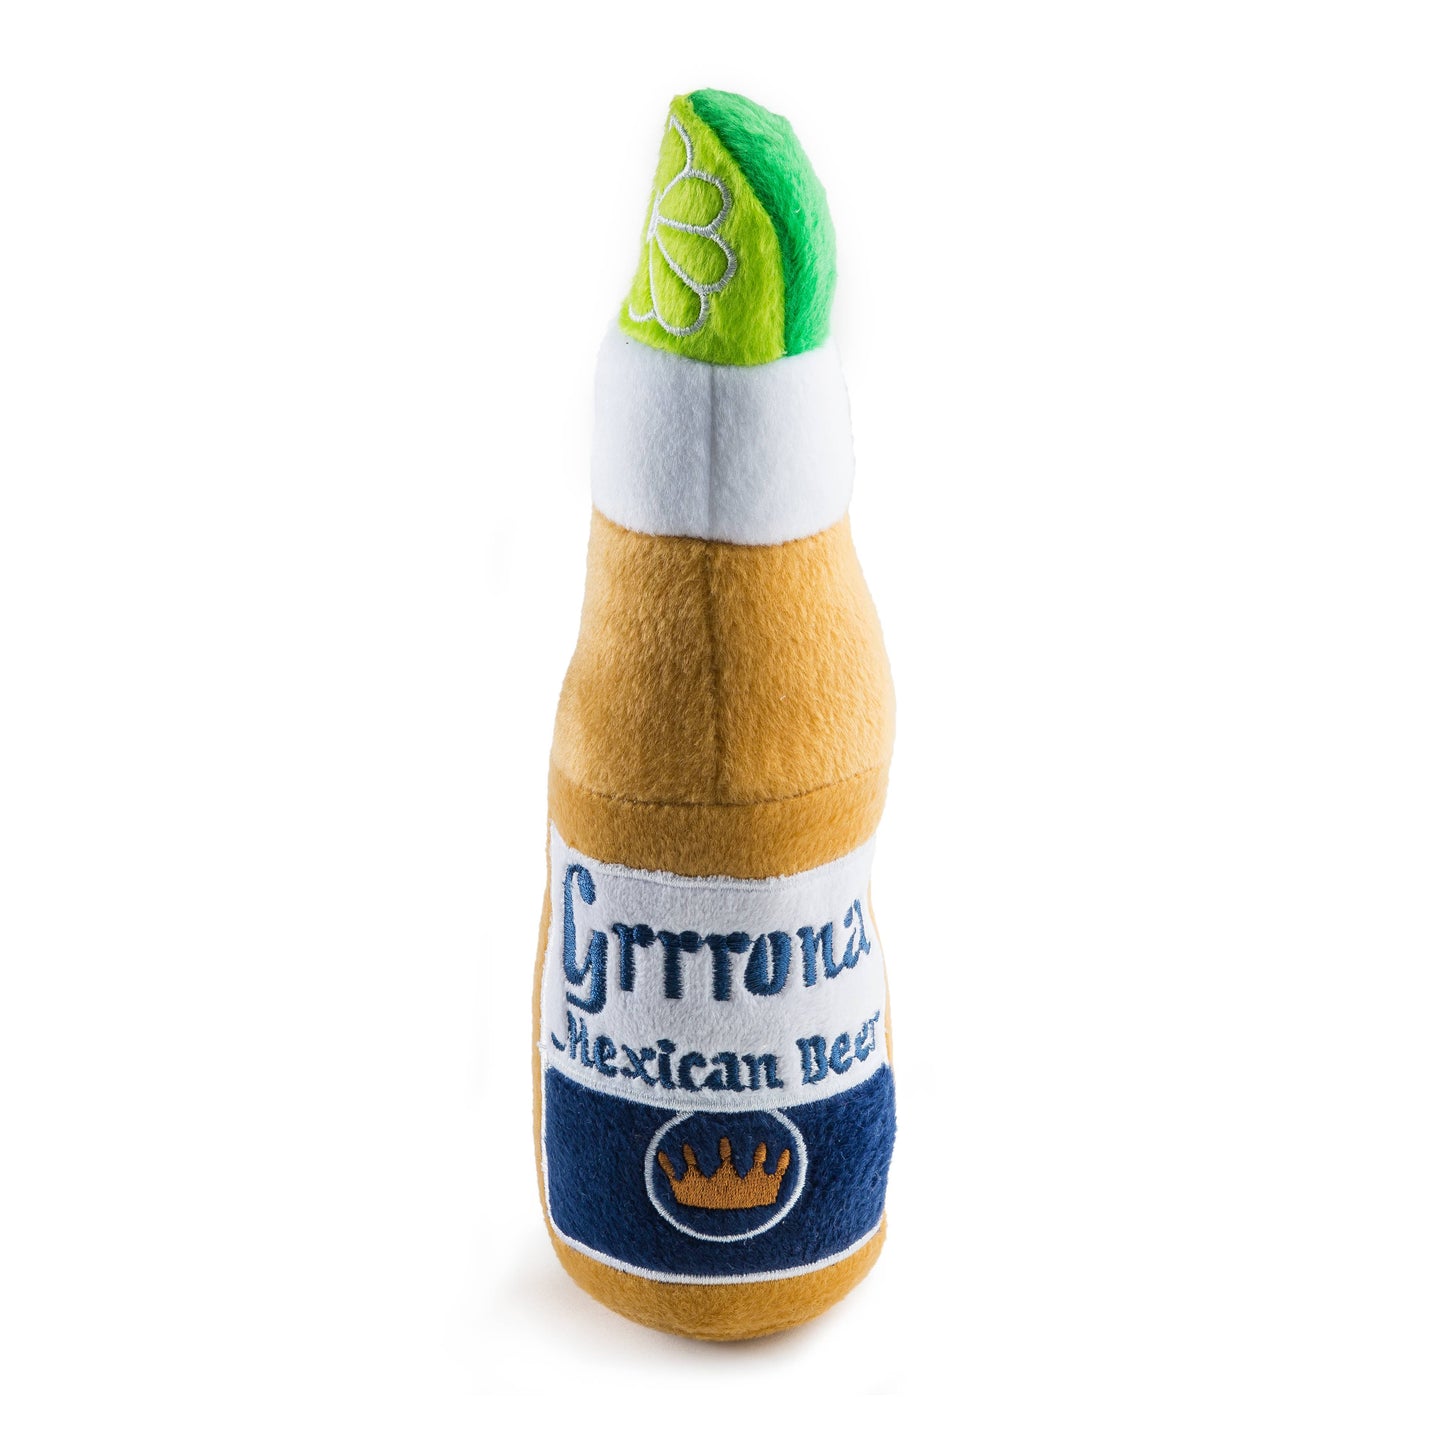 Grrrona Beer Bottle Squeaker Dog Toy